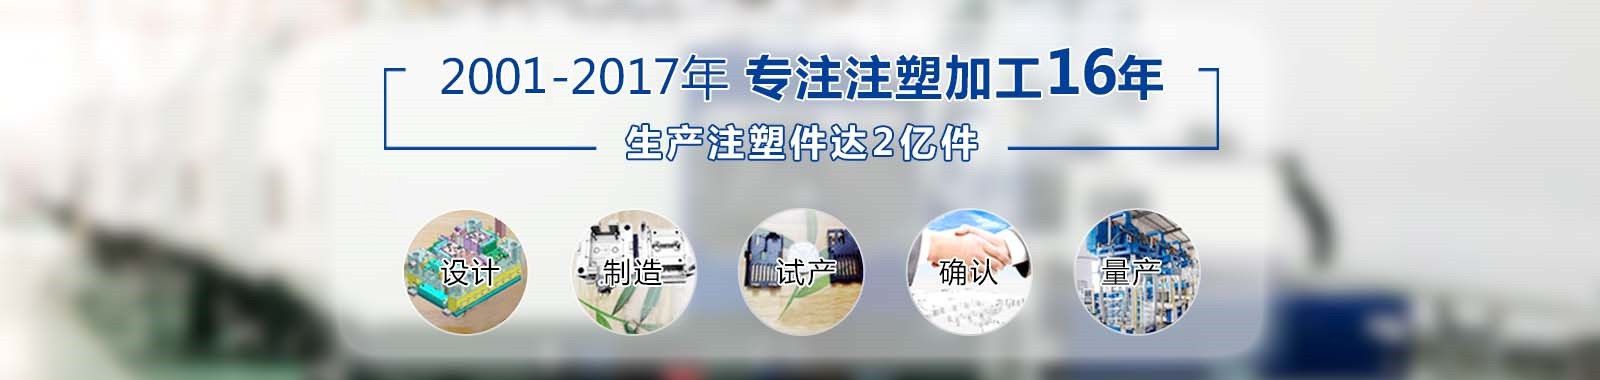 乐鱼官网APP登录中国乐鱼股份有限公司官网专注塑胶制品16年